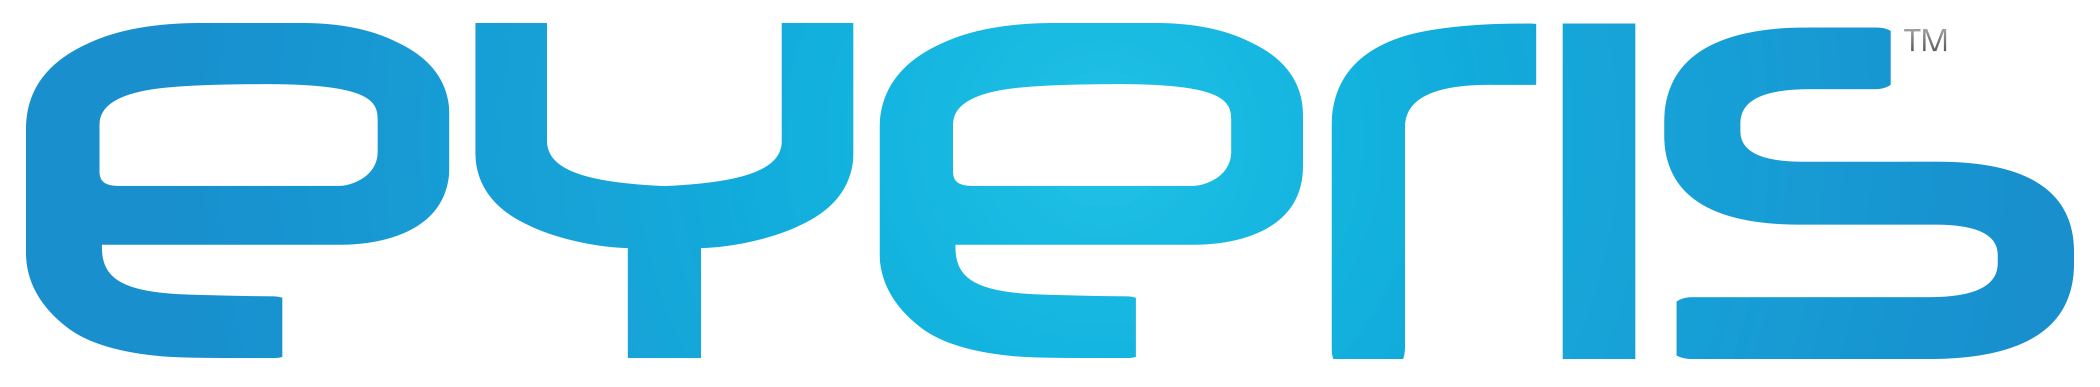 Eyeris logo.png